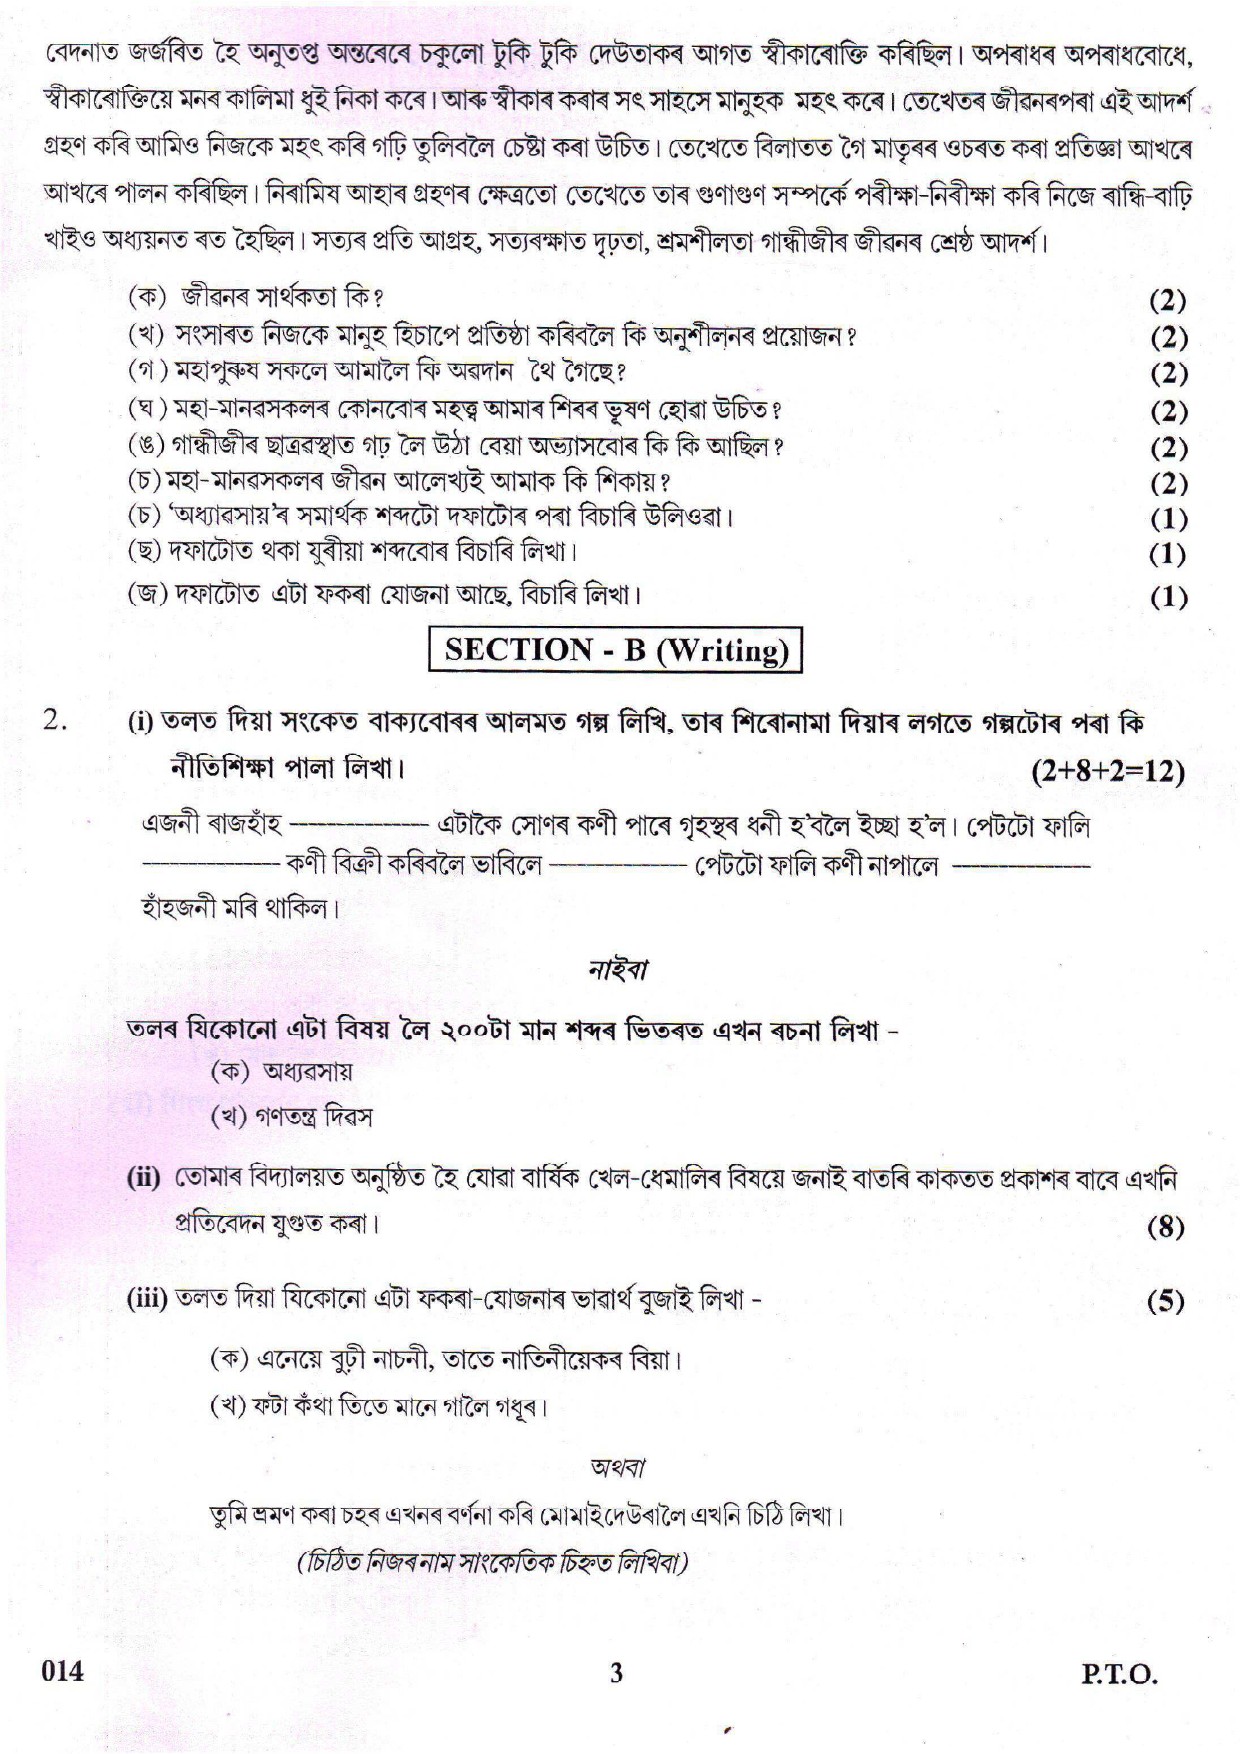 Assamese CBSE Class X Sample Question Paper 2018-19 - Image 3